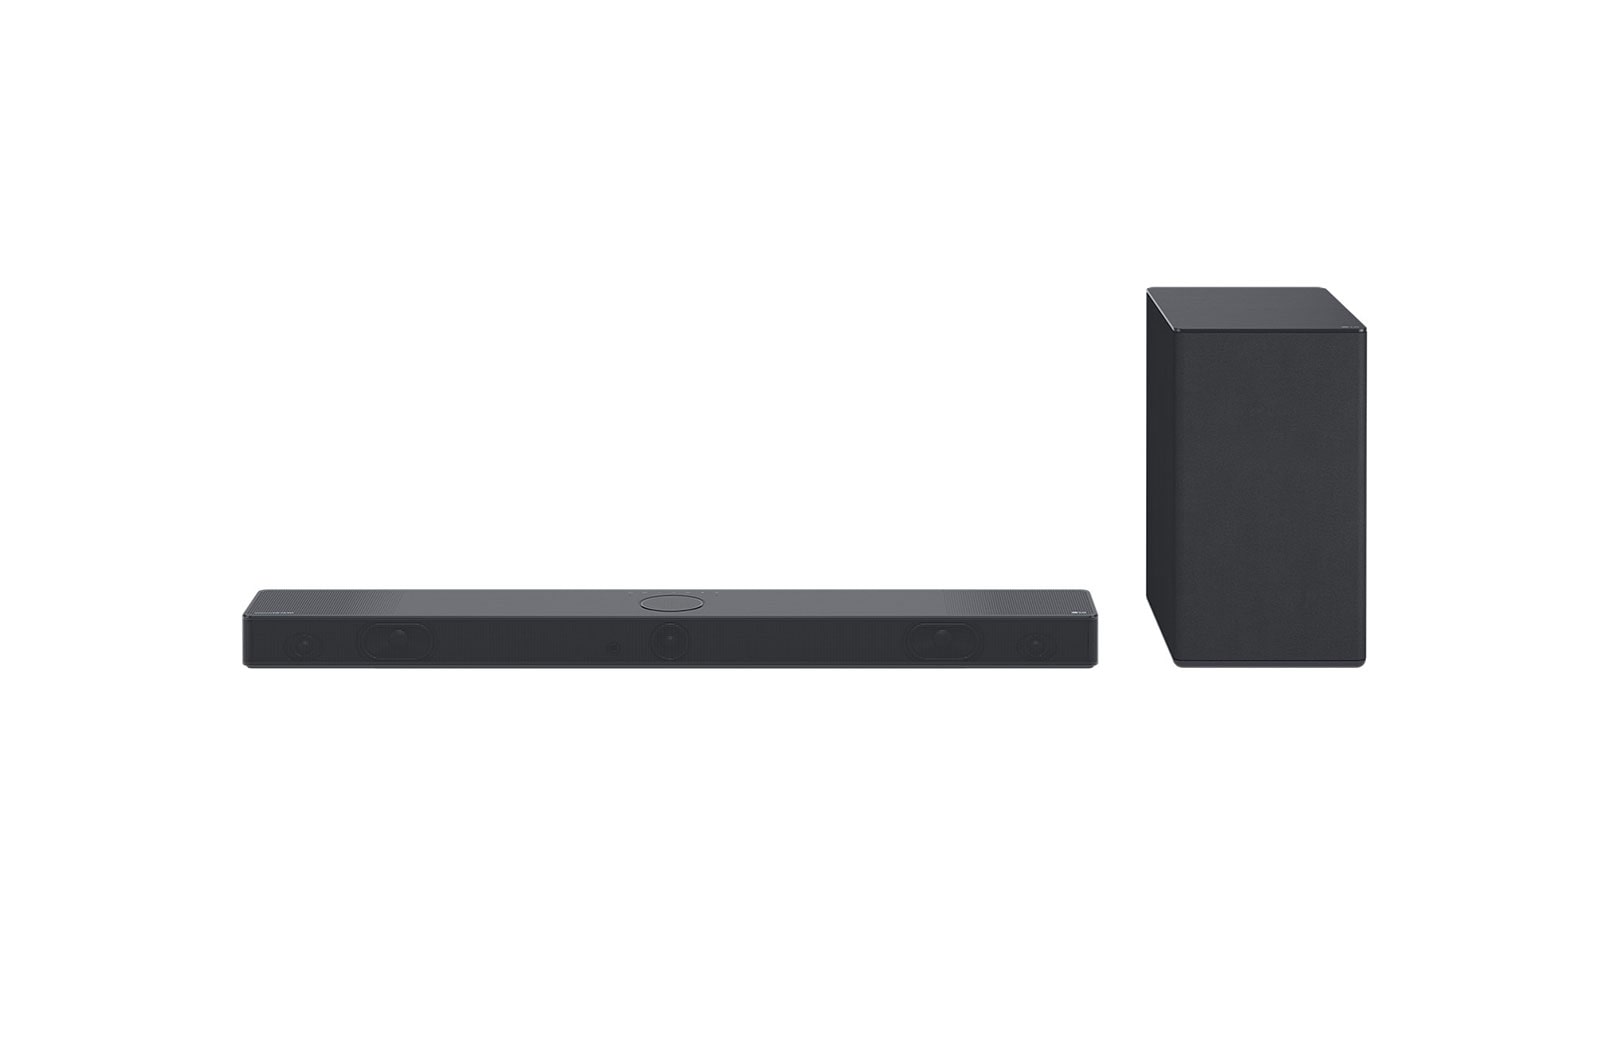 LG Soundbar LG SC9S 3.1.3 canais Wi-Fi Bluetooth USB HDMI DOLBY ATMOS DTS:X E IMAX Alexa e Google Assistente, SC9S